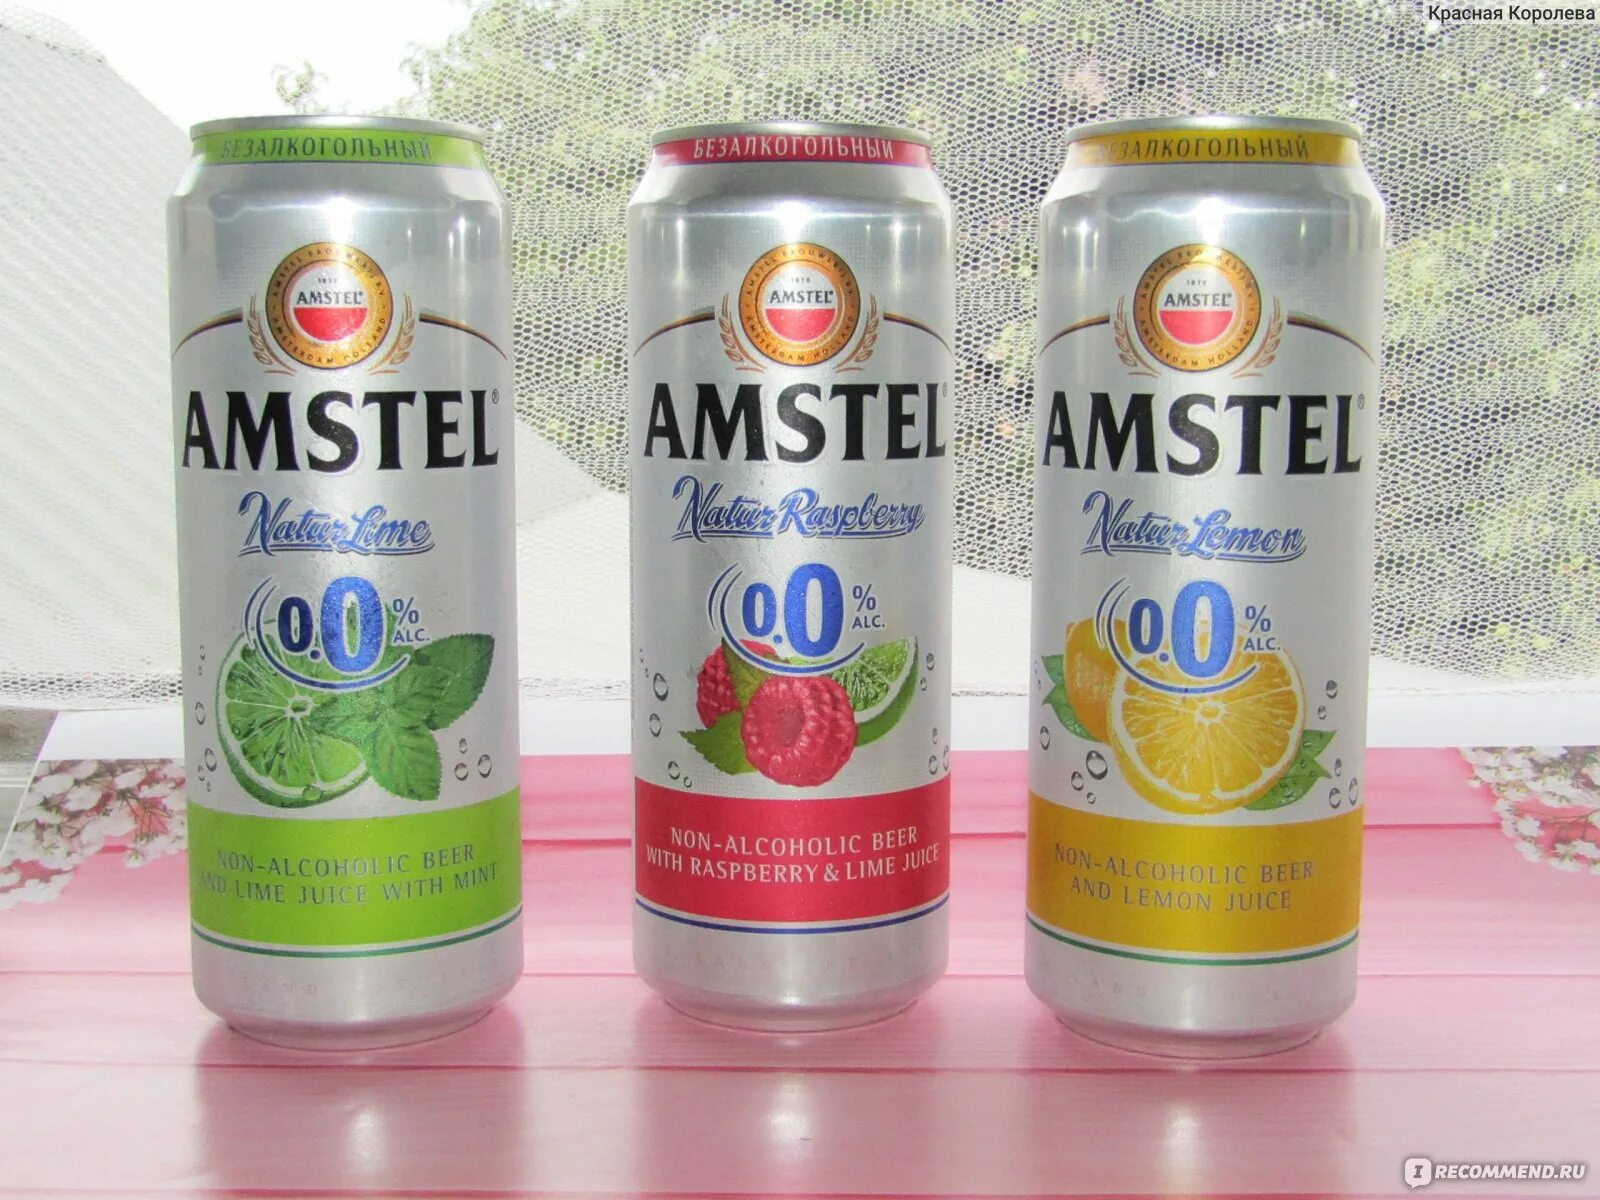 Безалкогольное пиво Амстел с малиной. Пиво Амстел безалкогольное. Amstel пиво безалкогольное. Пиво малина лайм Амстел безалкогольное. Можно в пост пить безалкогольное пиво